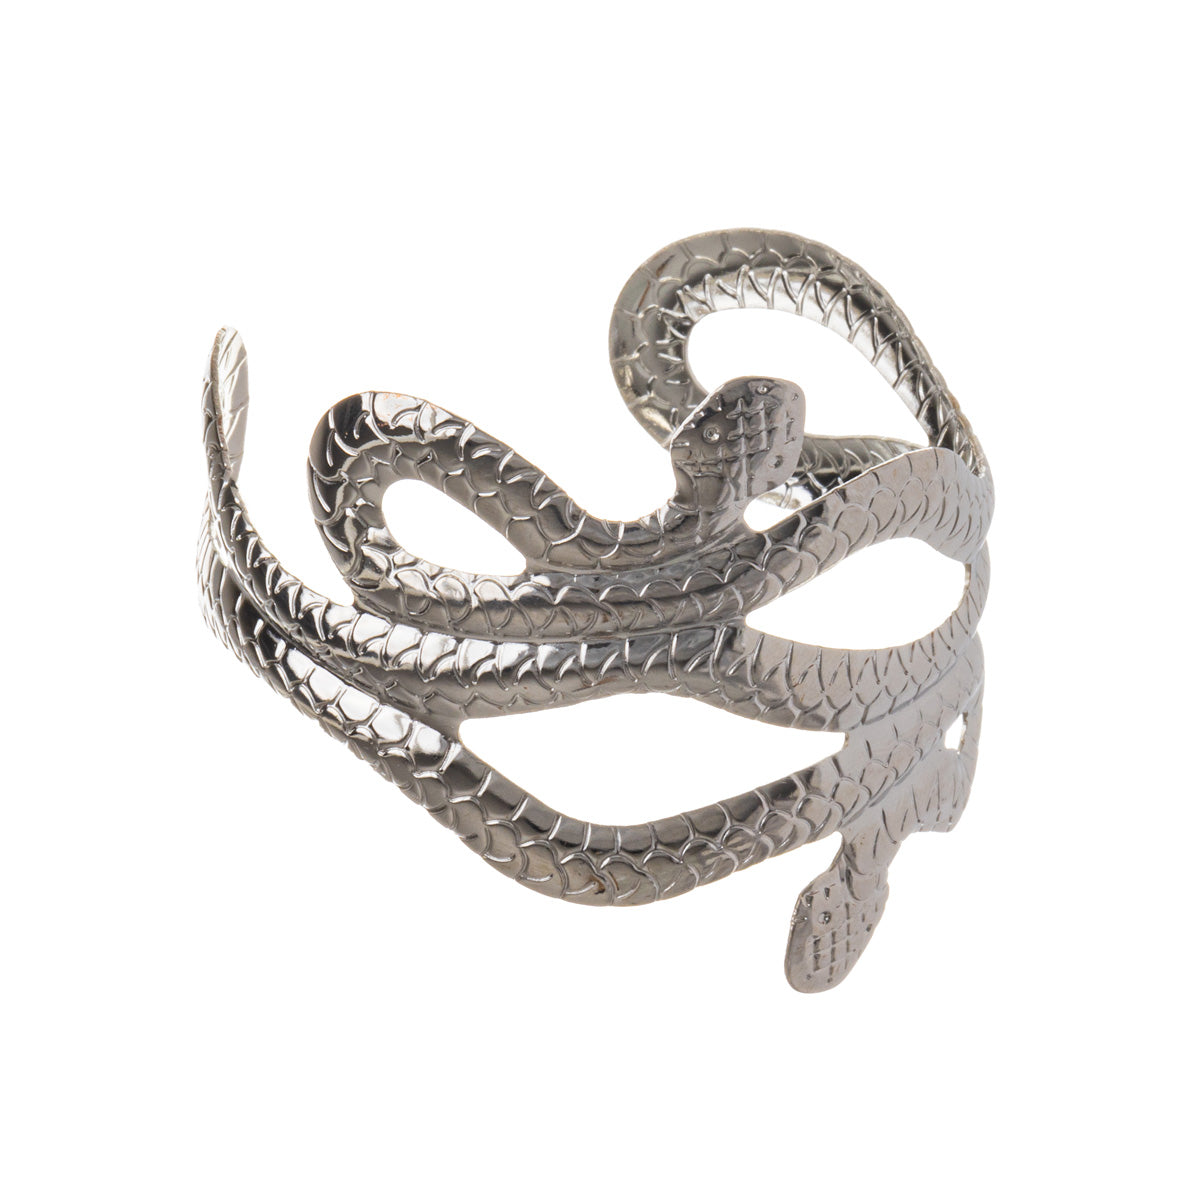 Metal adjustable snake bracelet